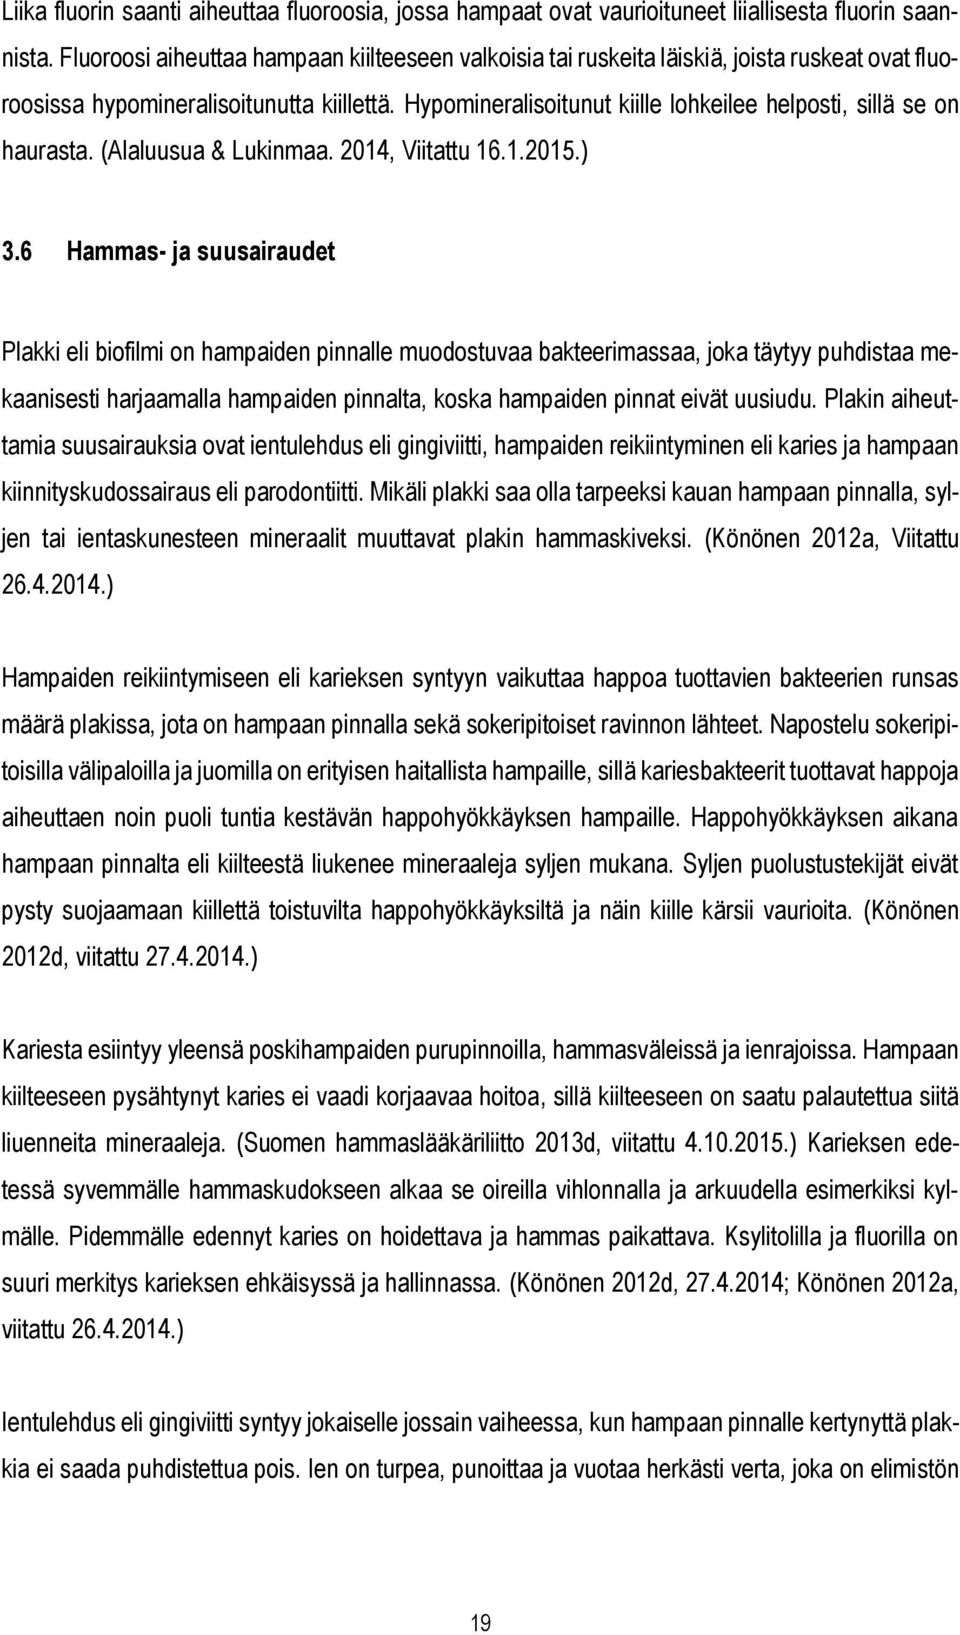 Hypomineralisoitunut kiille lohkeilee helposti, sillä se on haurasta. (Alaluusua & Lukinmaa. 2014, Viitattu 16.1.2015.) 3.